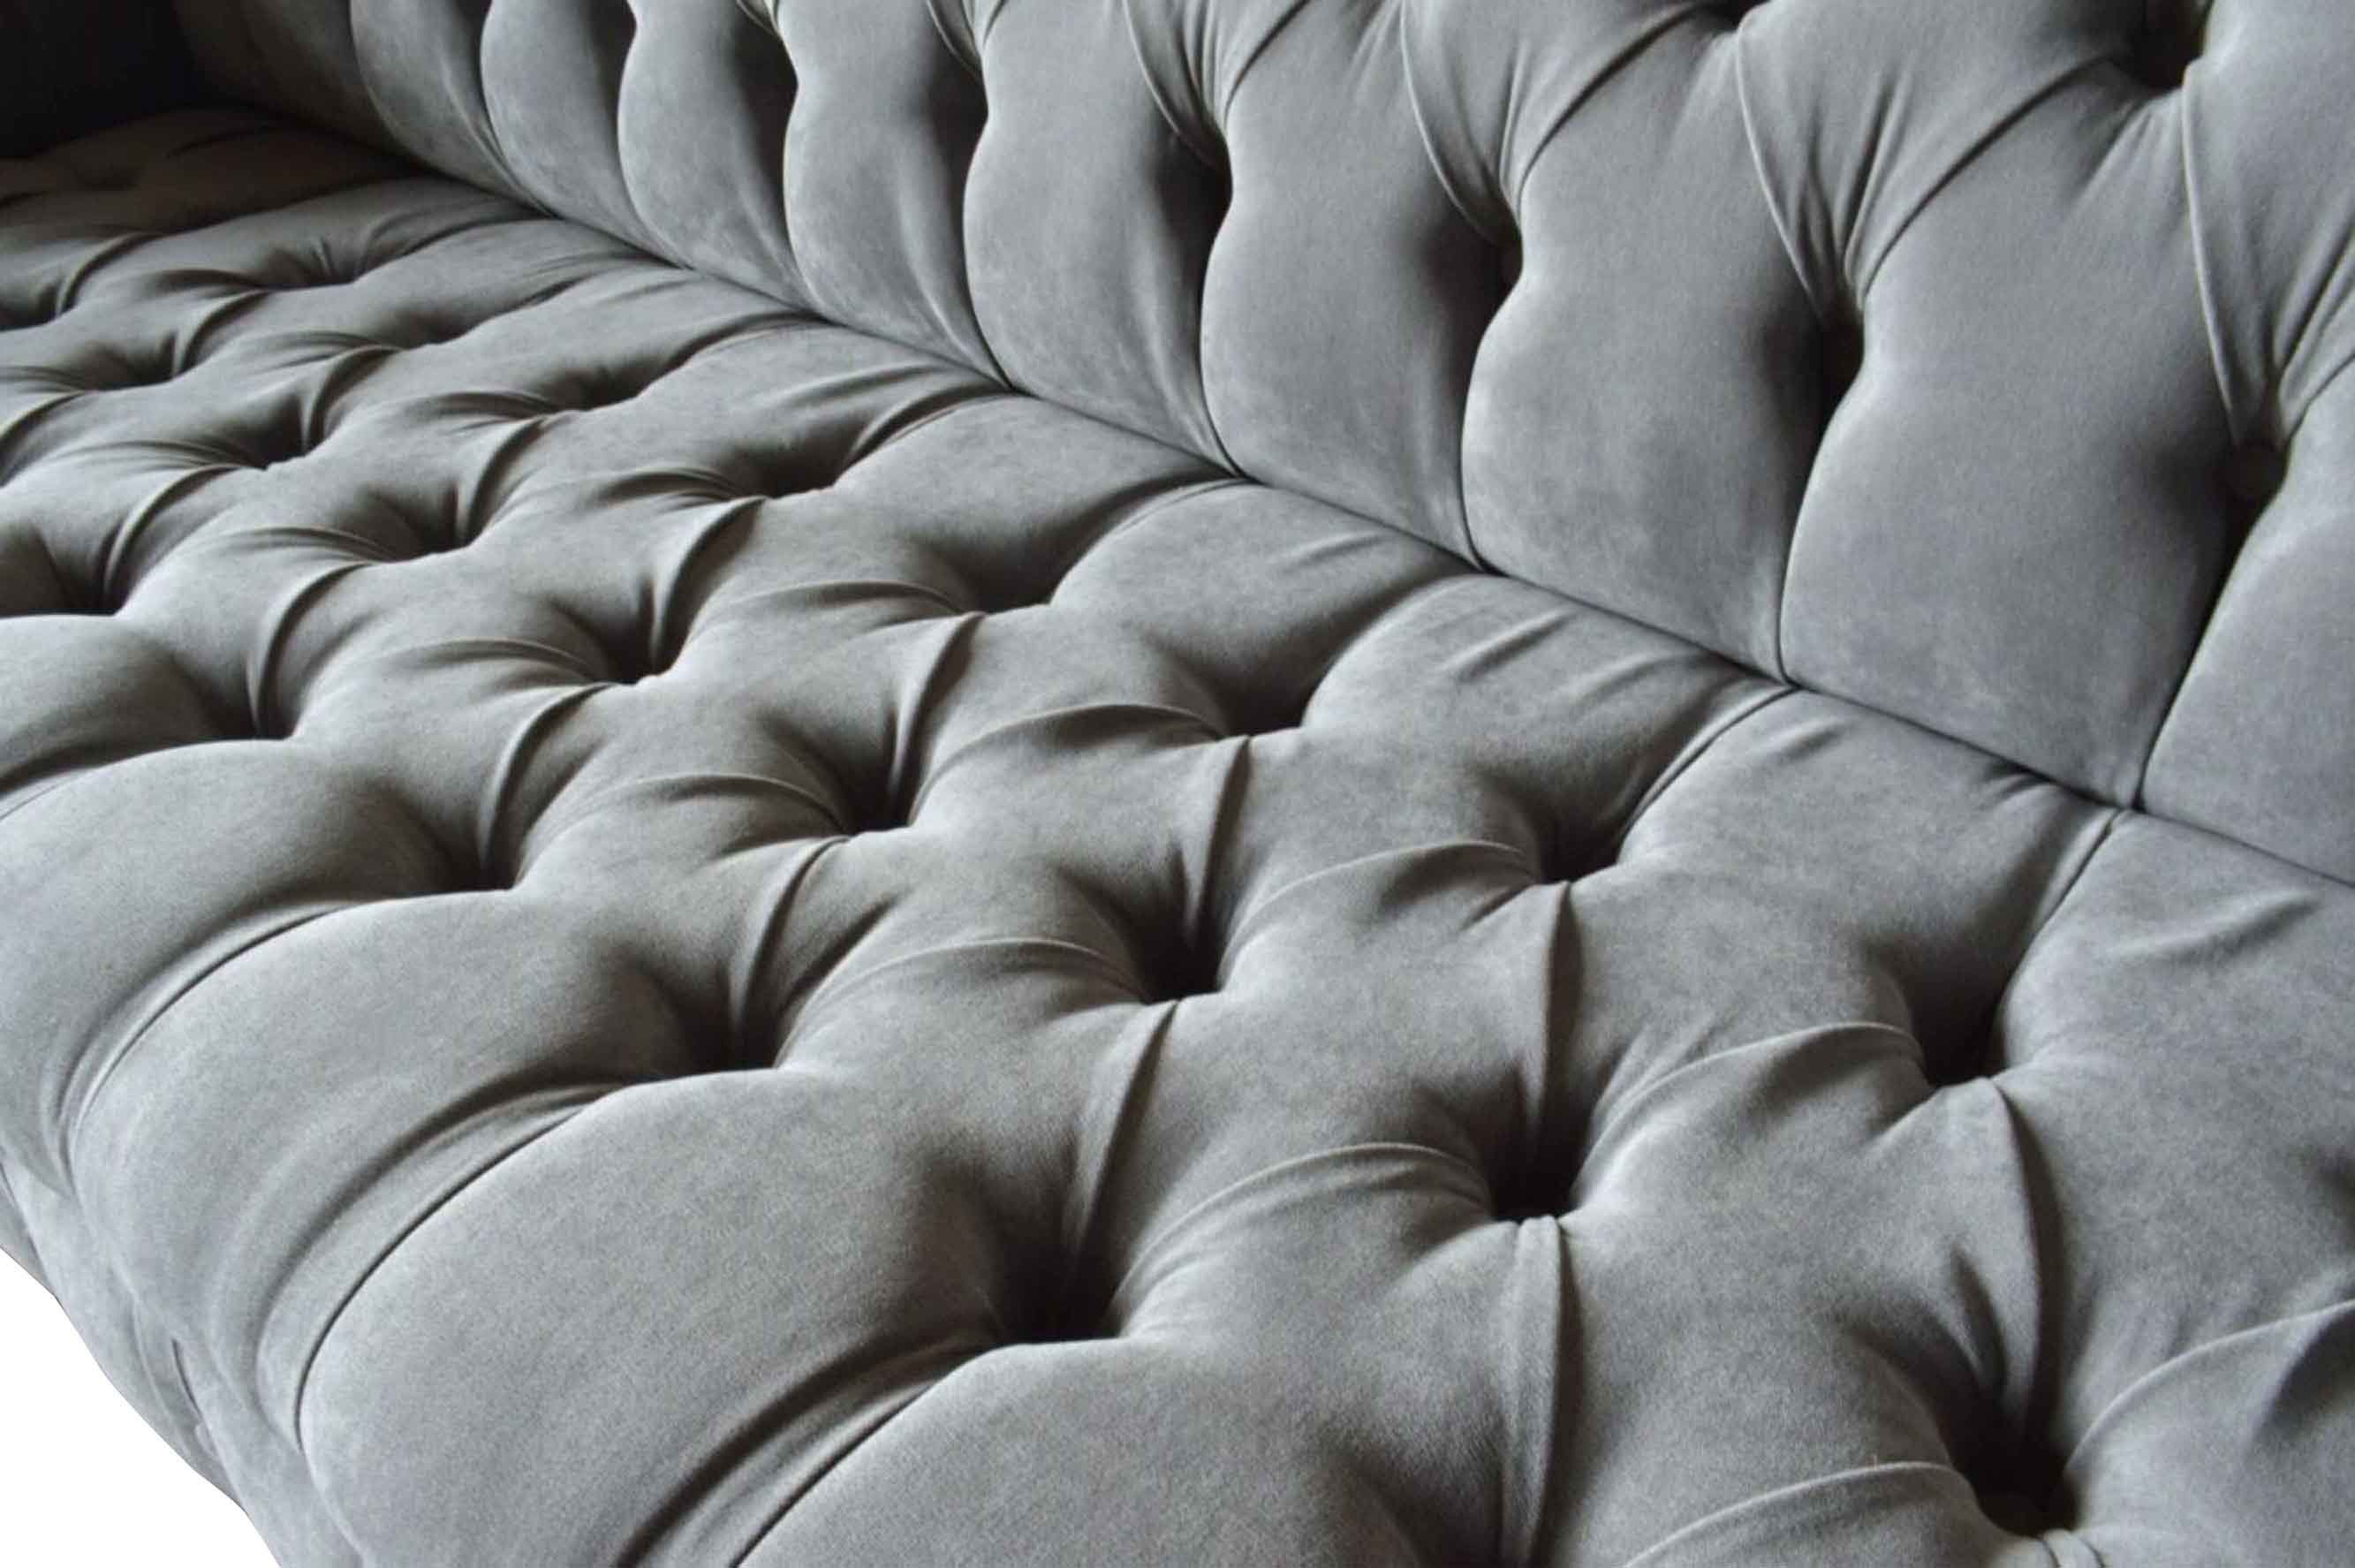 JVmoebel Chesterfield-Sofa, Sofa Wohnzimmer Klassisch Sofas Neu Couch Chesterfield Design